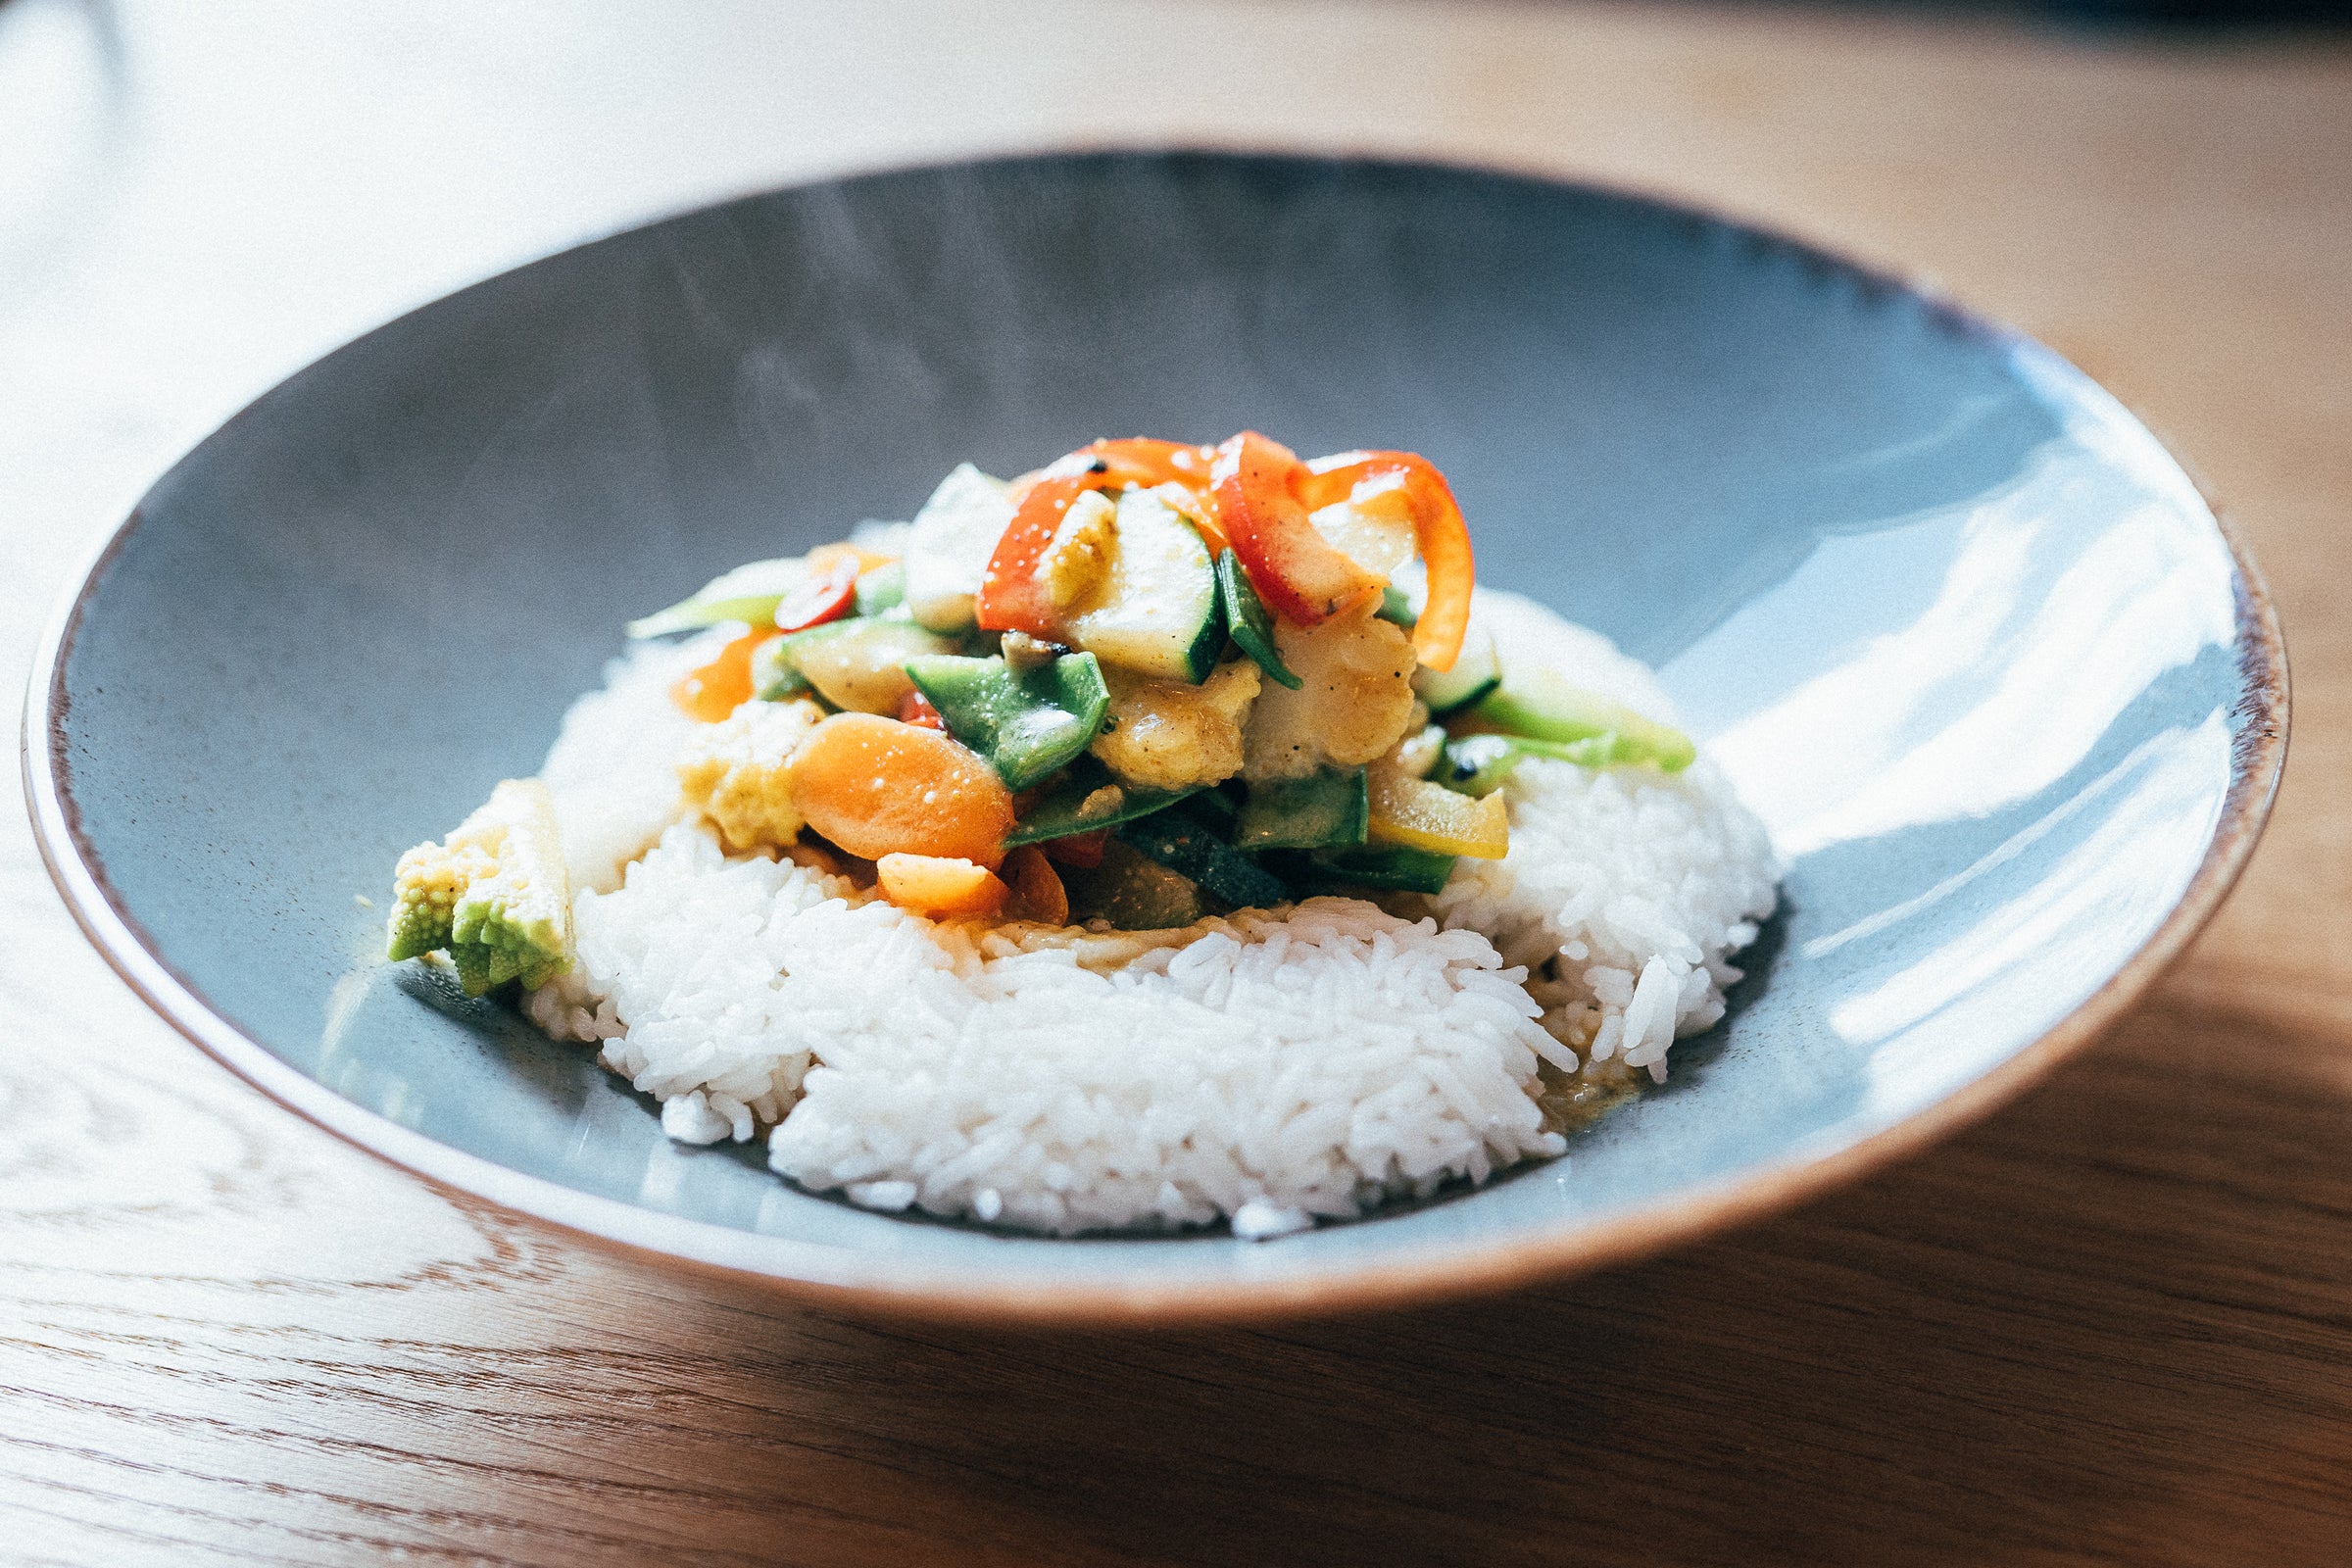 Deliciosas verduras sobre arroz servidas en un hermoso plato azul.